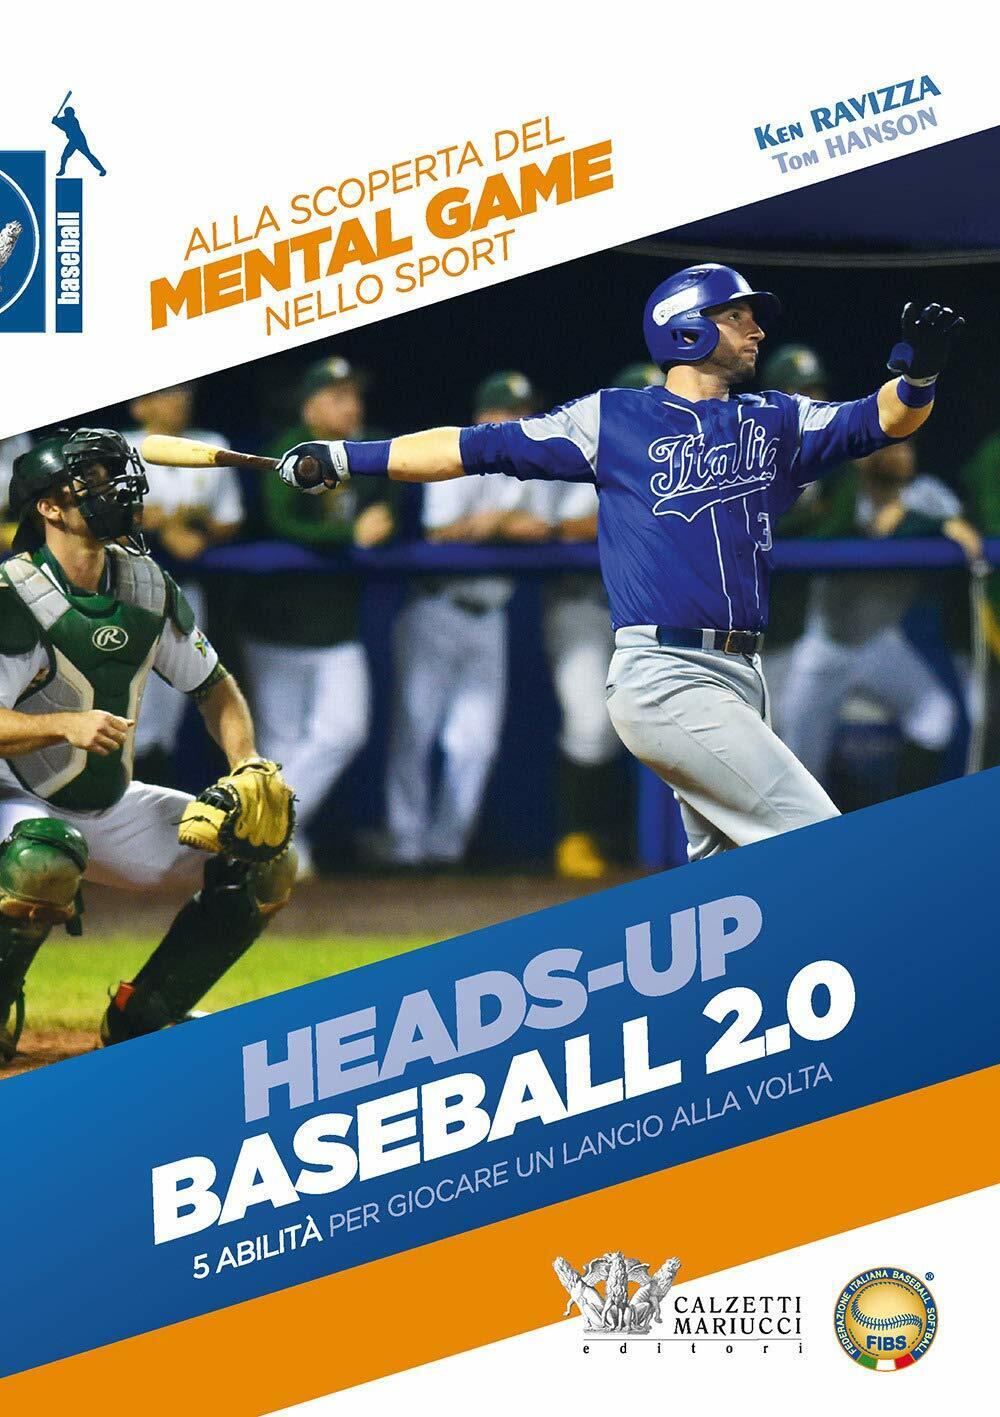 Heads-up. Baseball 2.0 - Ken Ravizza, Tom Hanson - Calzetti Mariucci, 2020